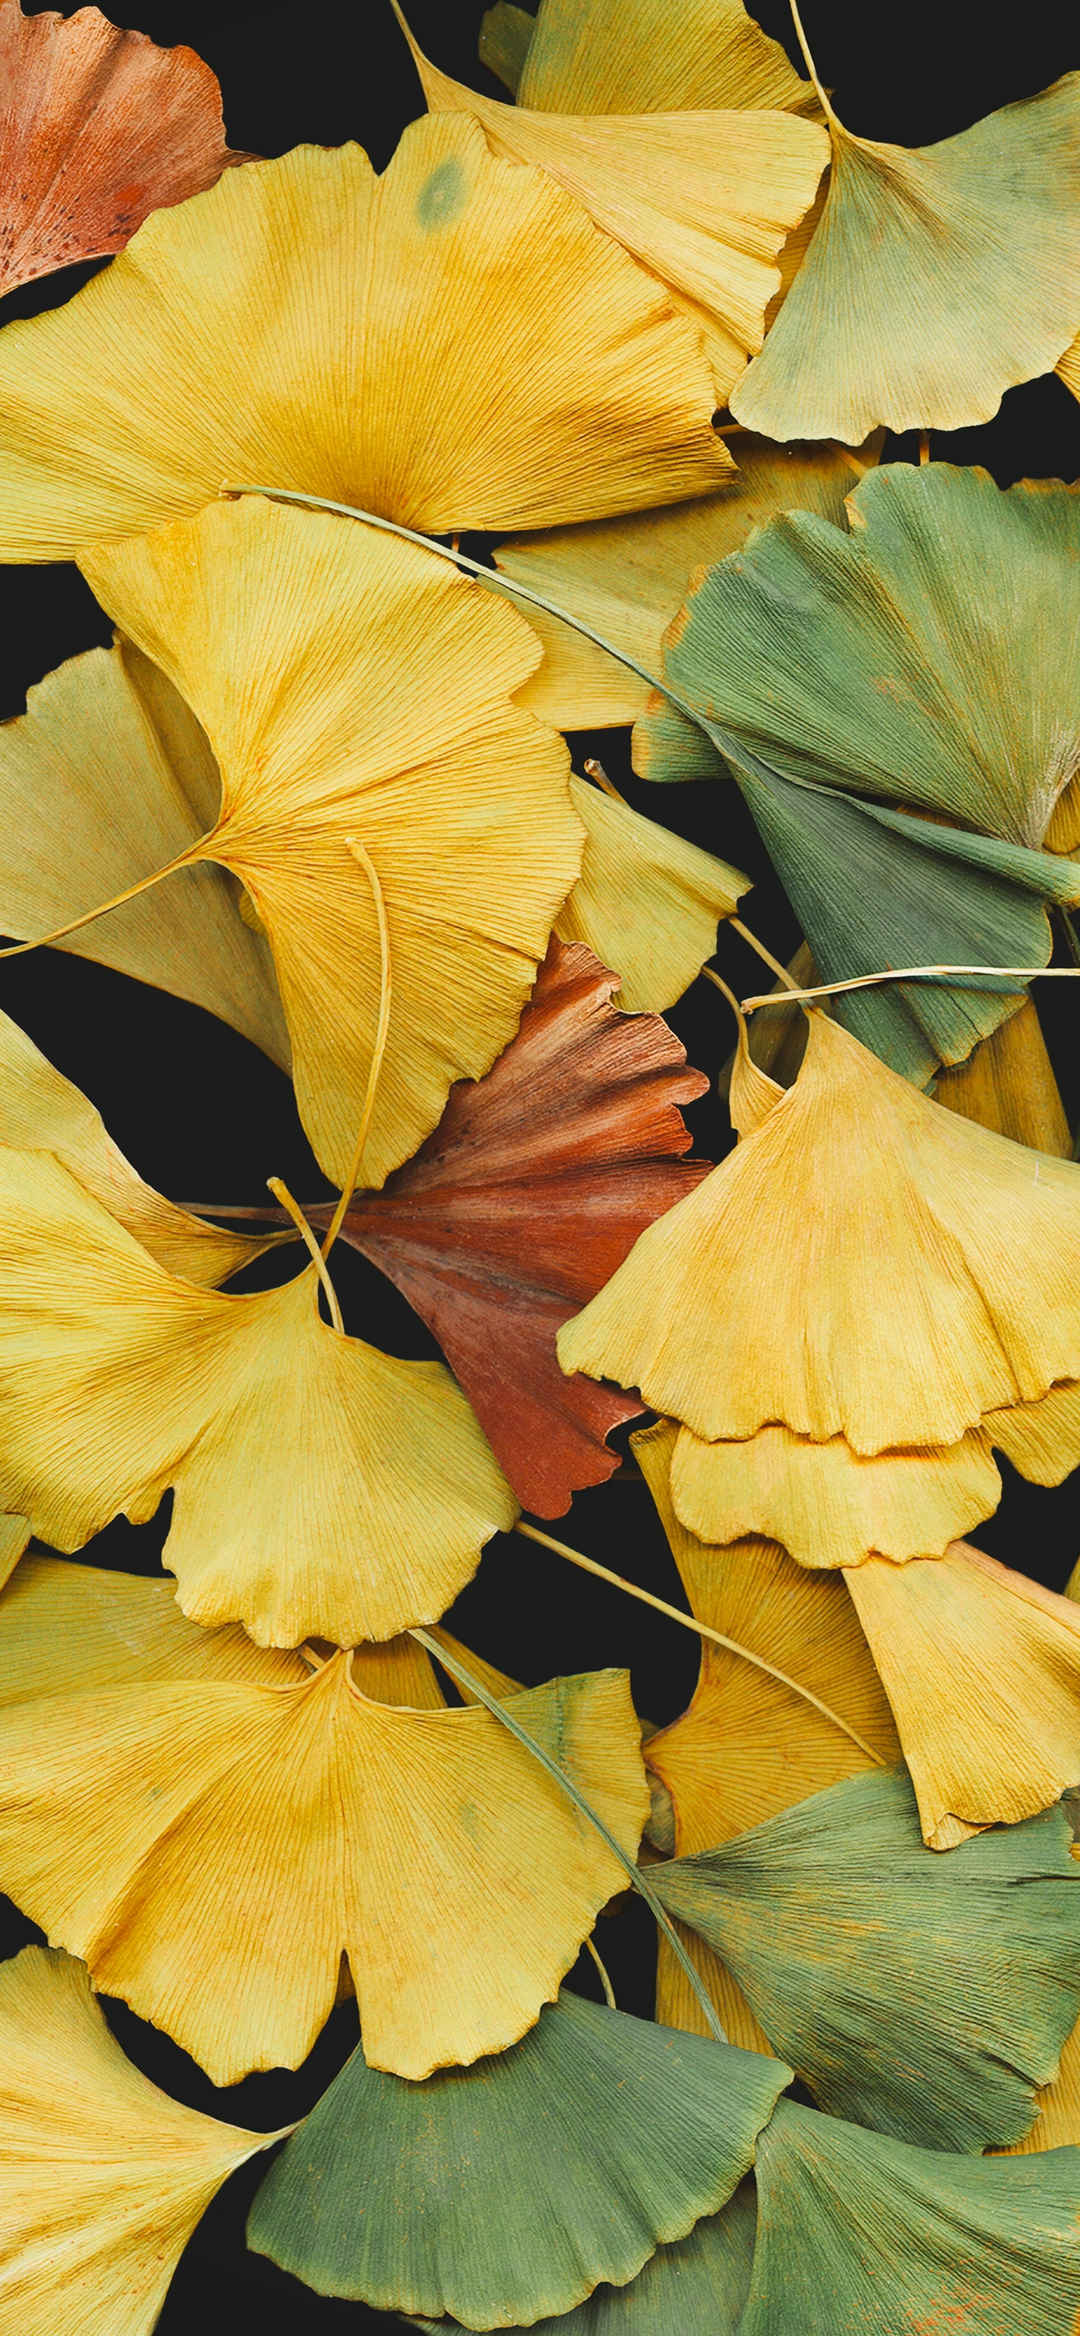 秋天浮萍干燥叶子美景壁纸-